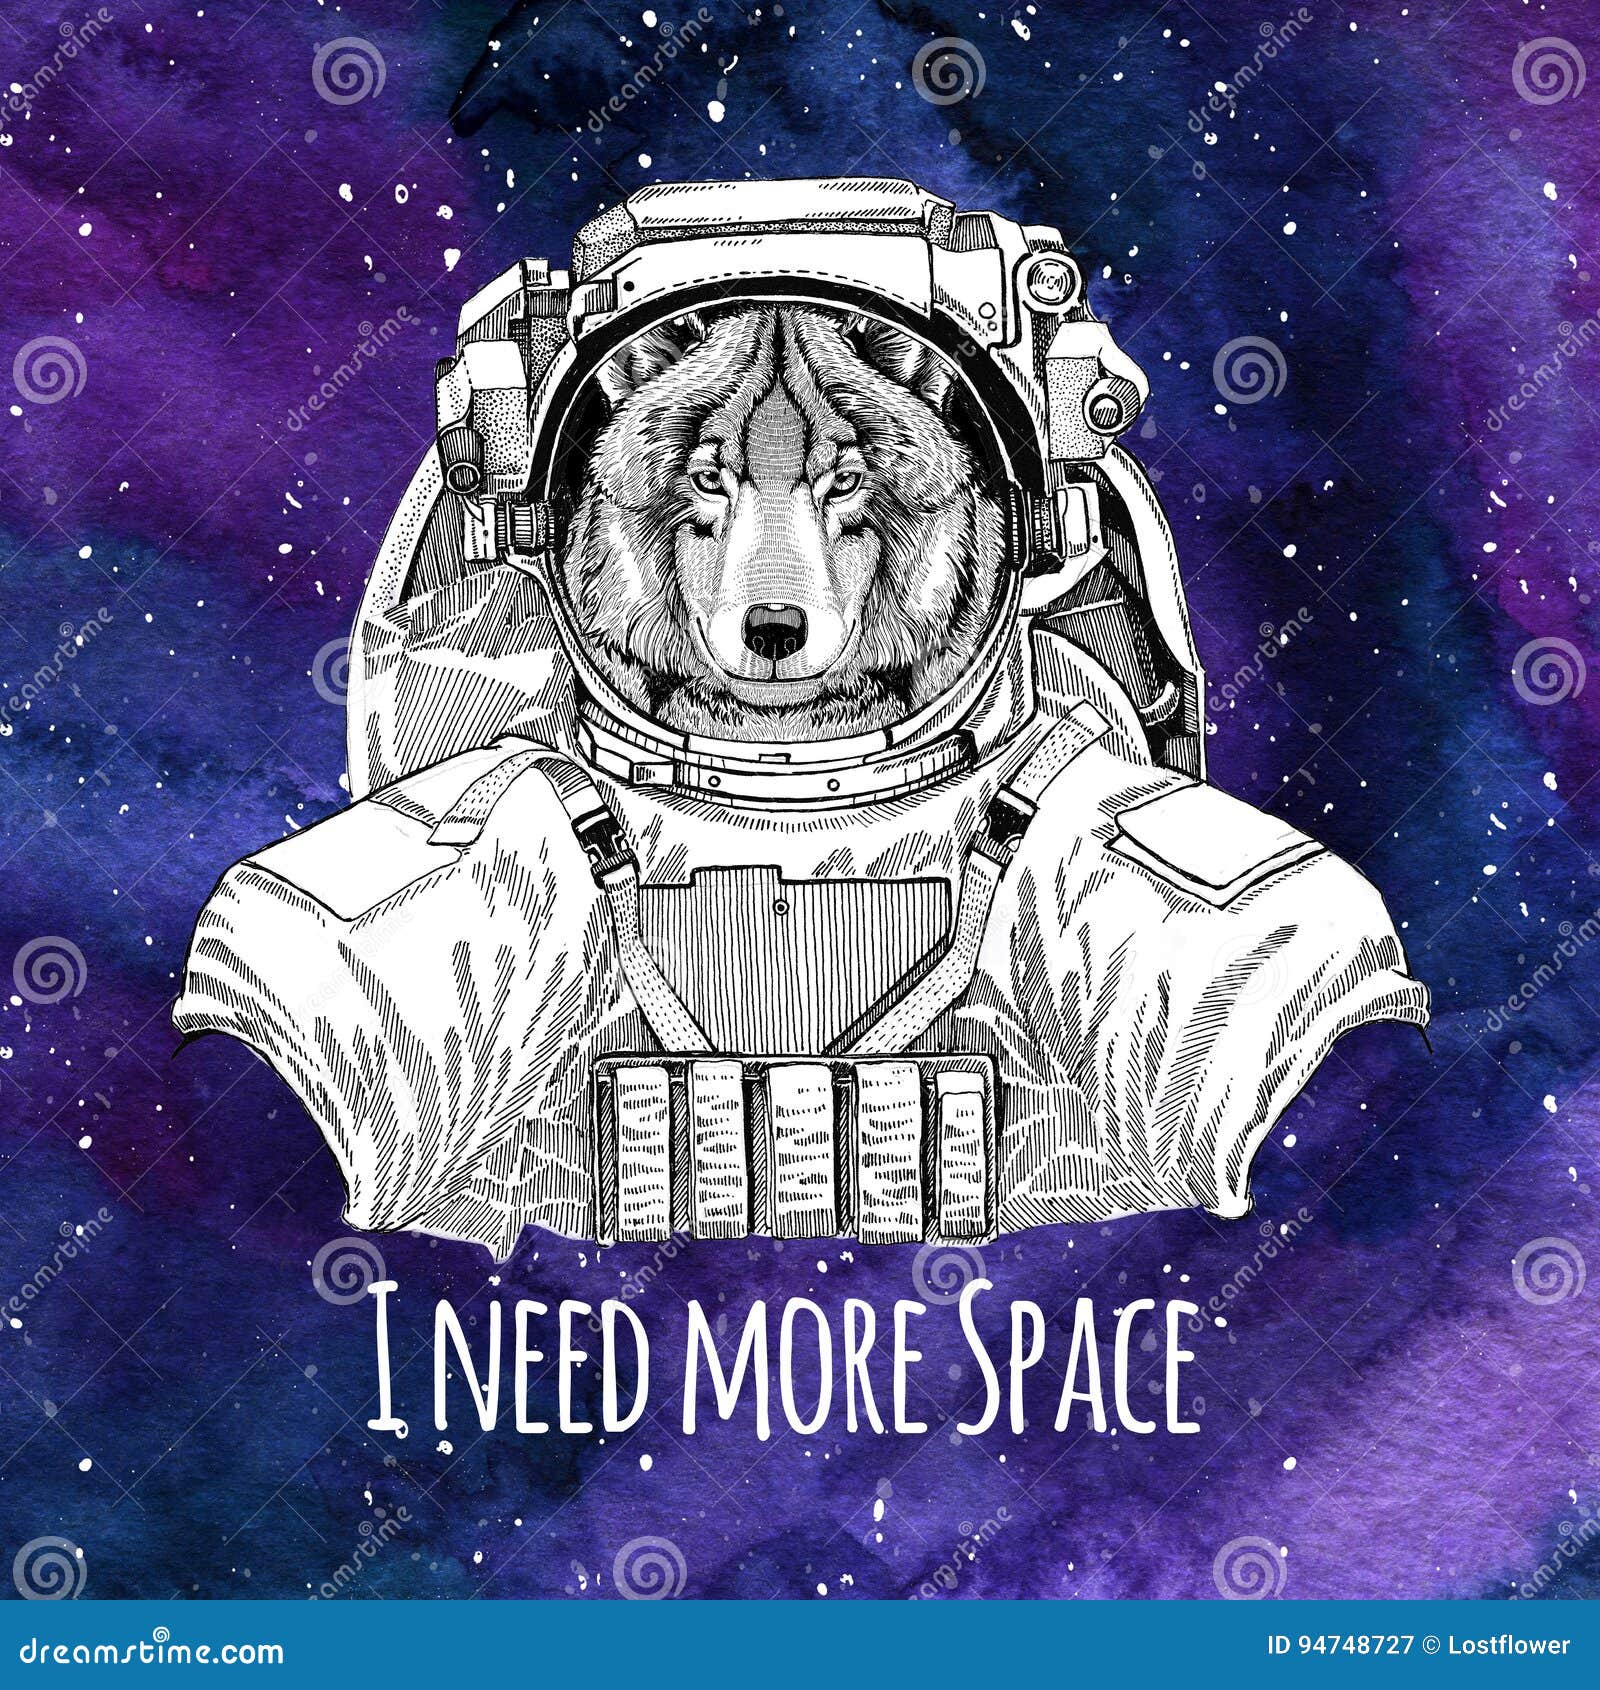 Con chó phi hành gia đáng yêu này đang chờ bạn để khám phá những cuộc phiêu lưu thú vị tại vũ trụ. Hãy theo chân chúng đến tận cùng của thiên hà và cùng chung tay khám phá những bí mật của vũ trụ.